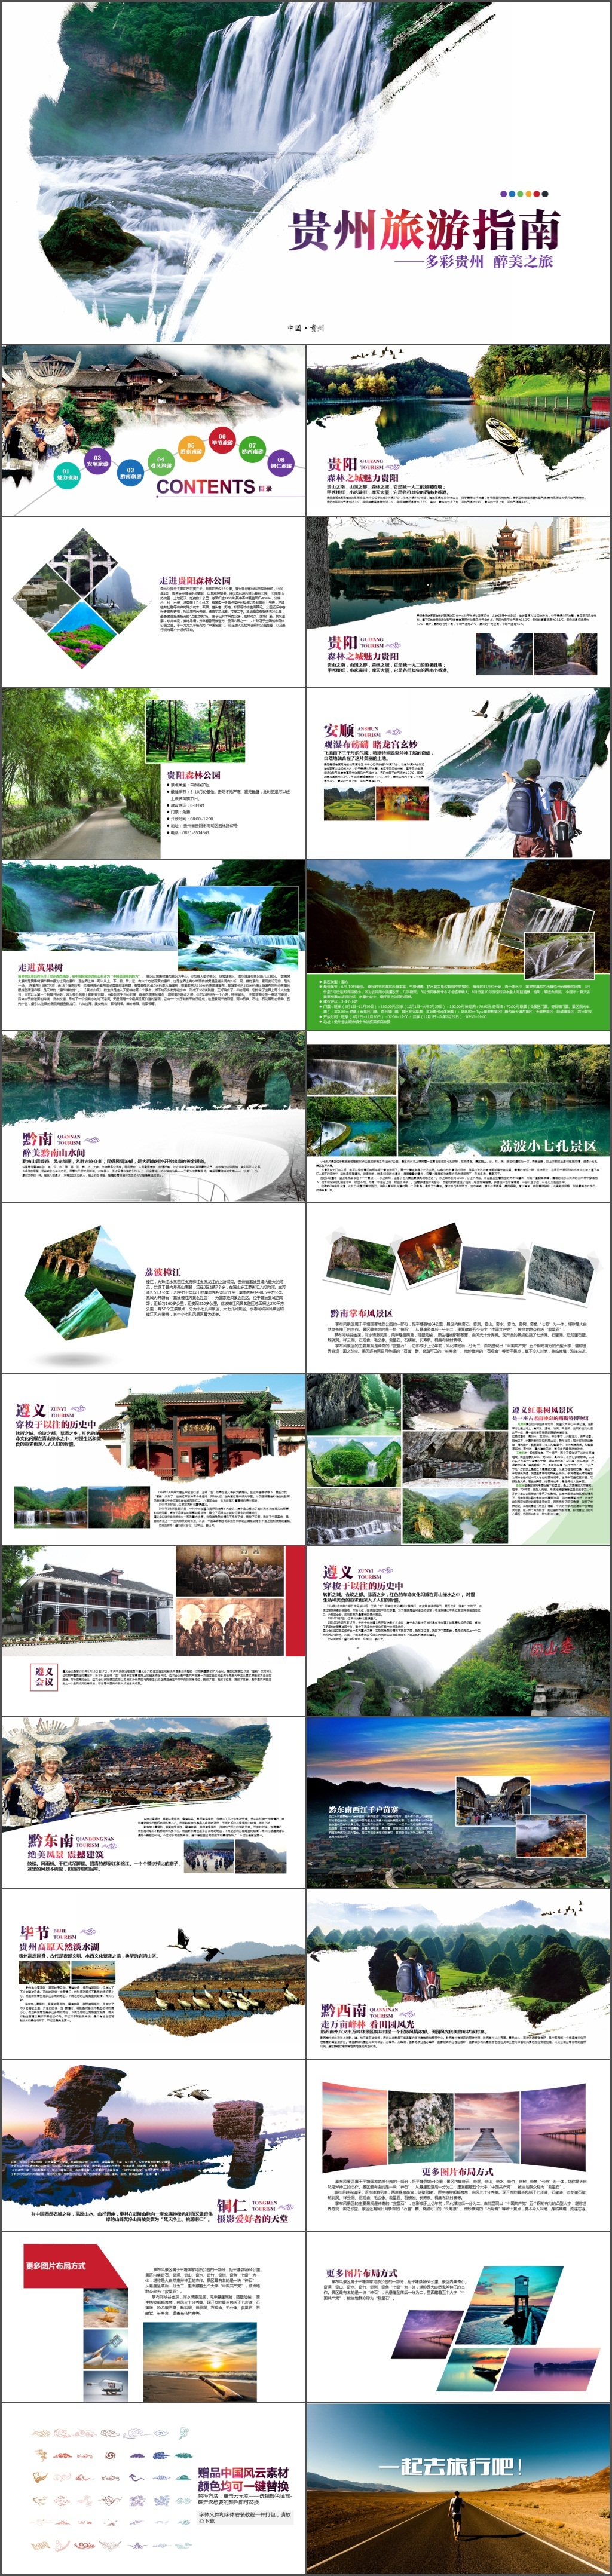 高端大气贵州旅游指南景点介绍电子相册PPT模板(98)